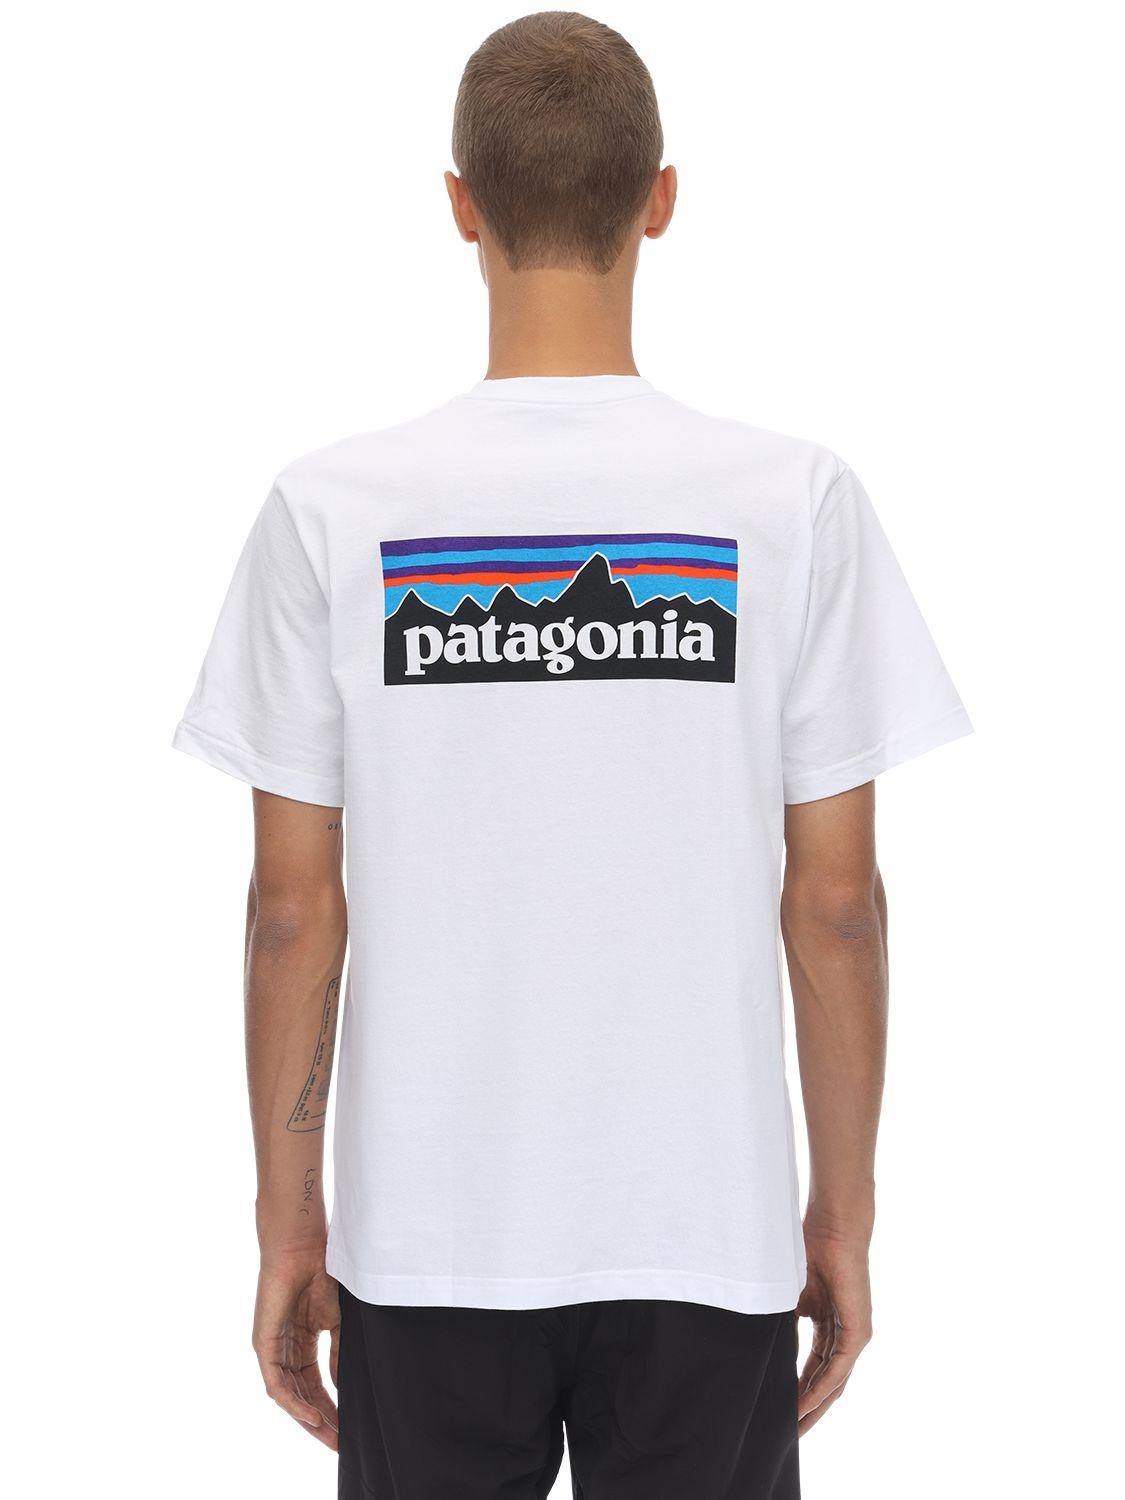 PATAGONIA “P-6 LOGO POCKET RESPONSIBILI-TEE”T恤,73I0LL002-V0HJ0